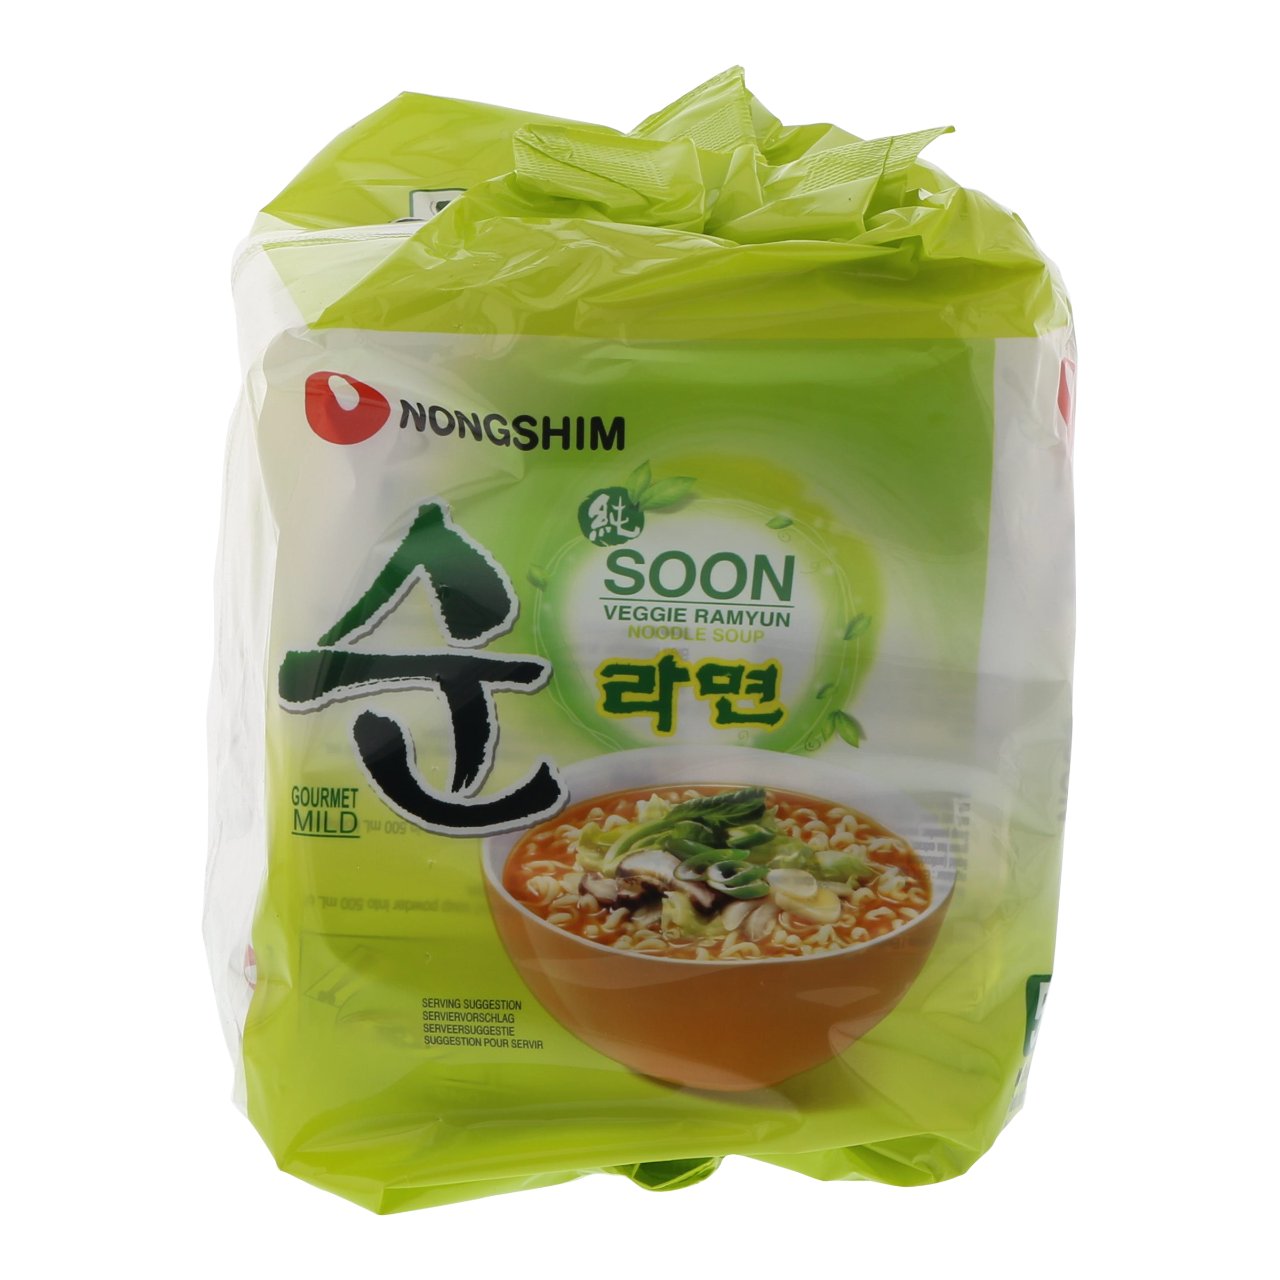 Noodle soup veggie